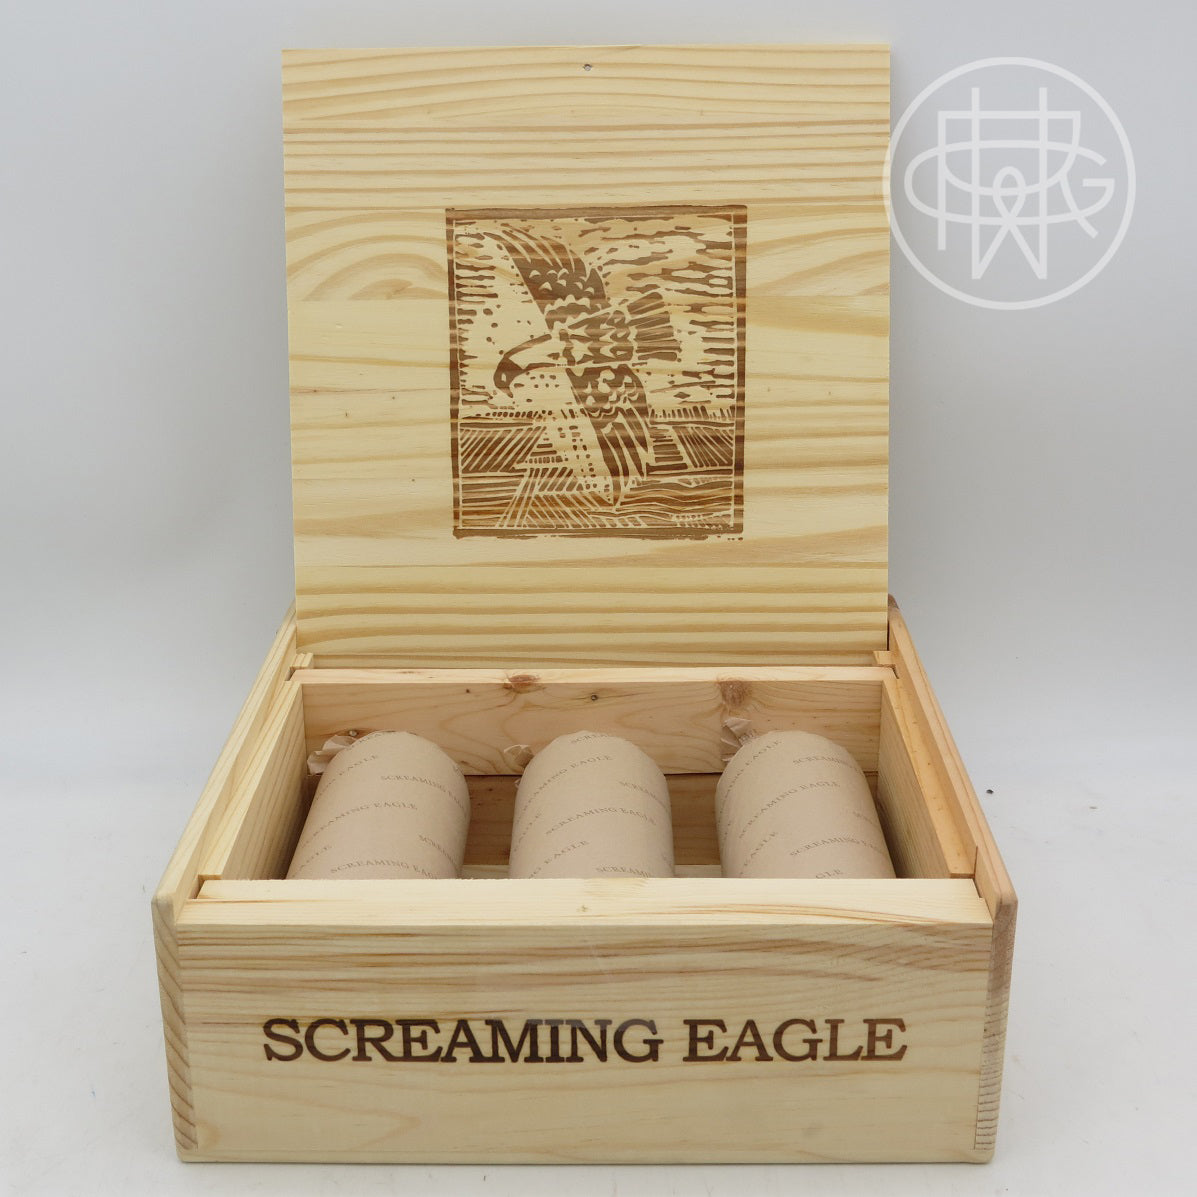 Screaming Eagle 2004 3-Pack OWC 750mL